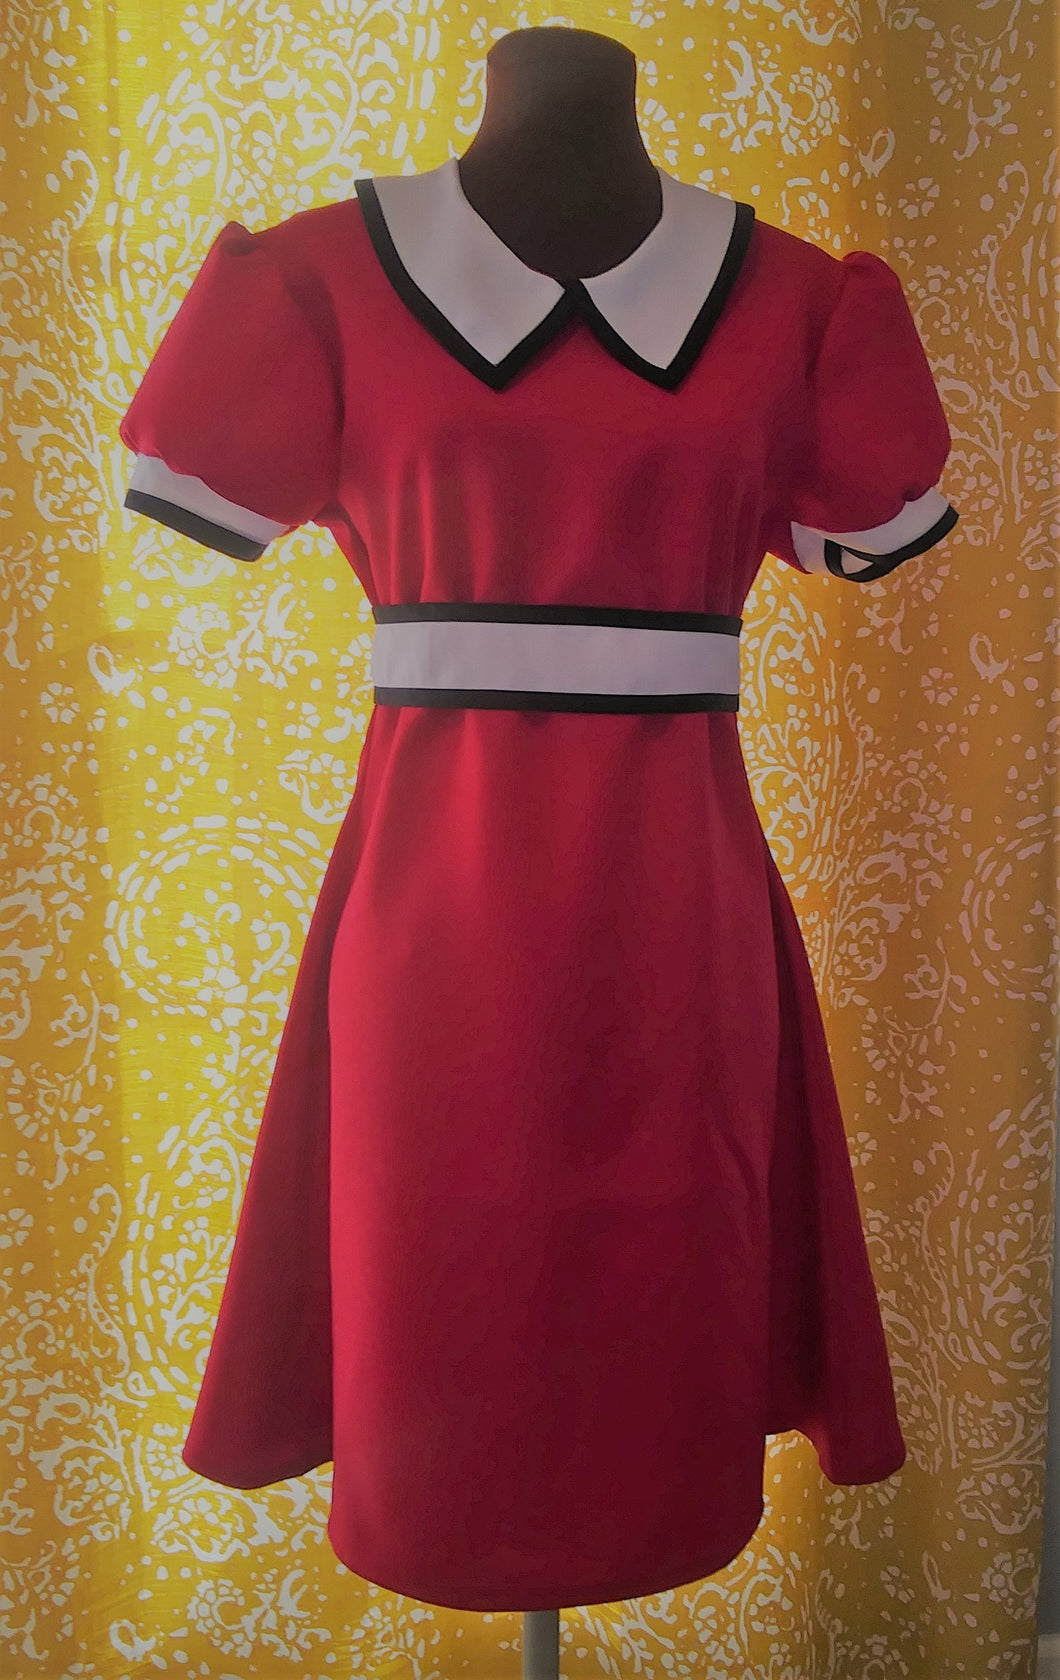 Annie's Red Dress